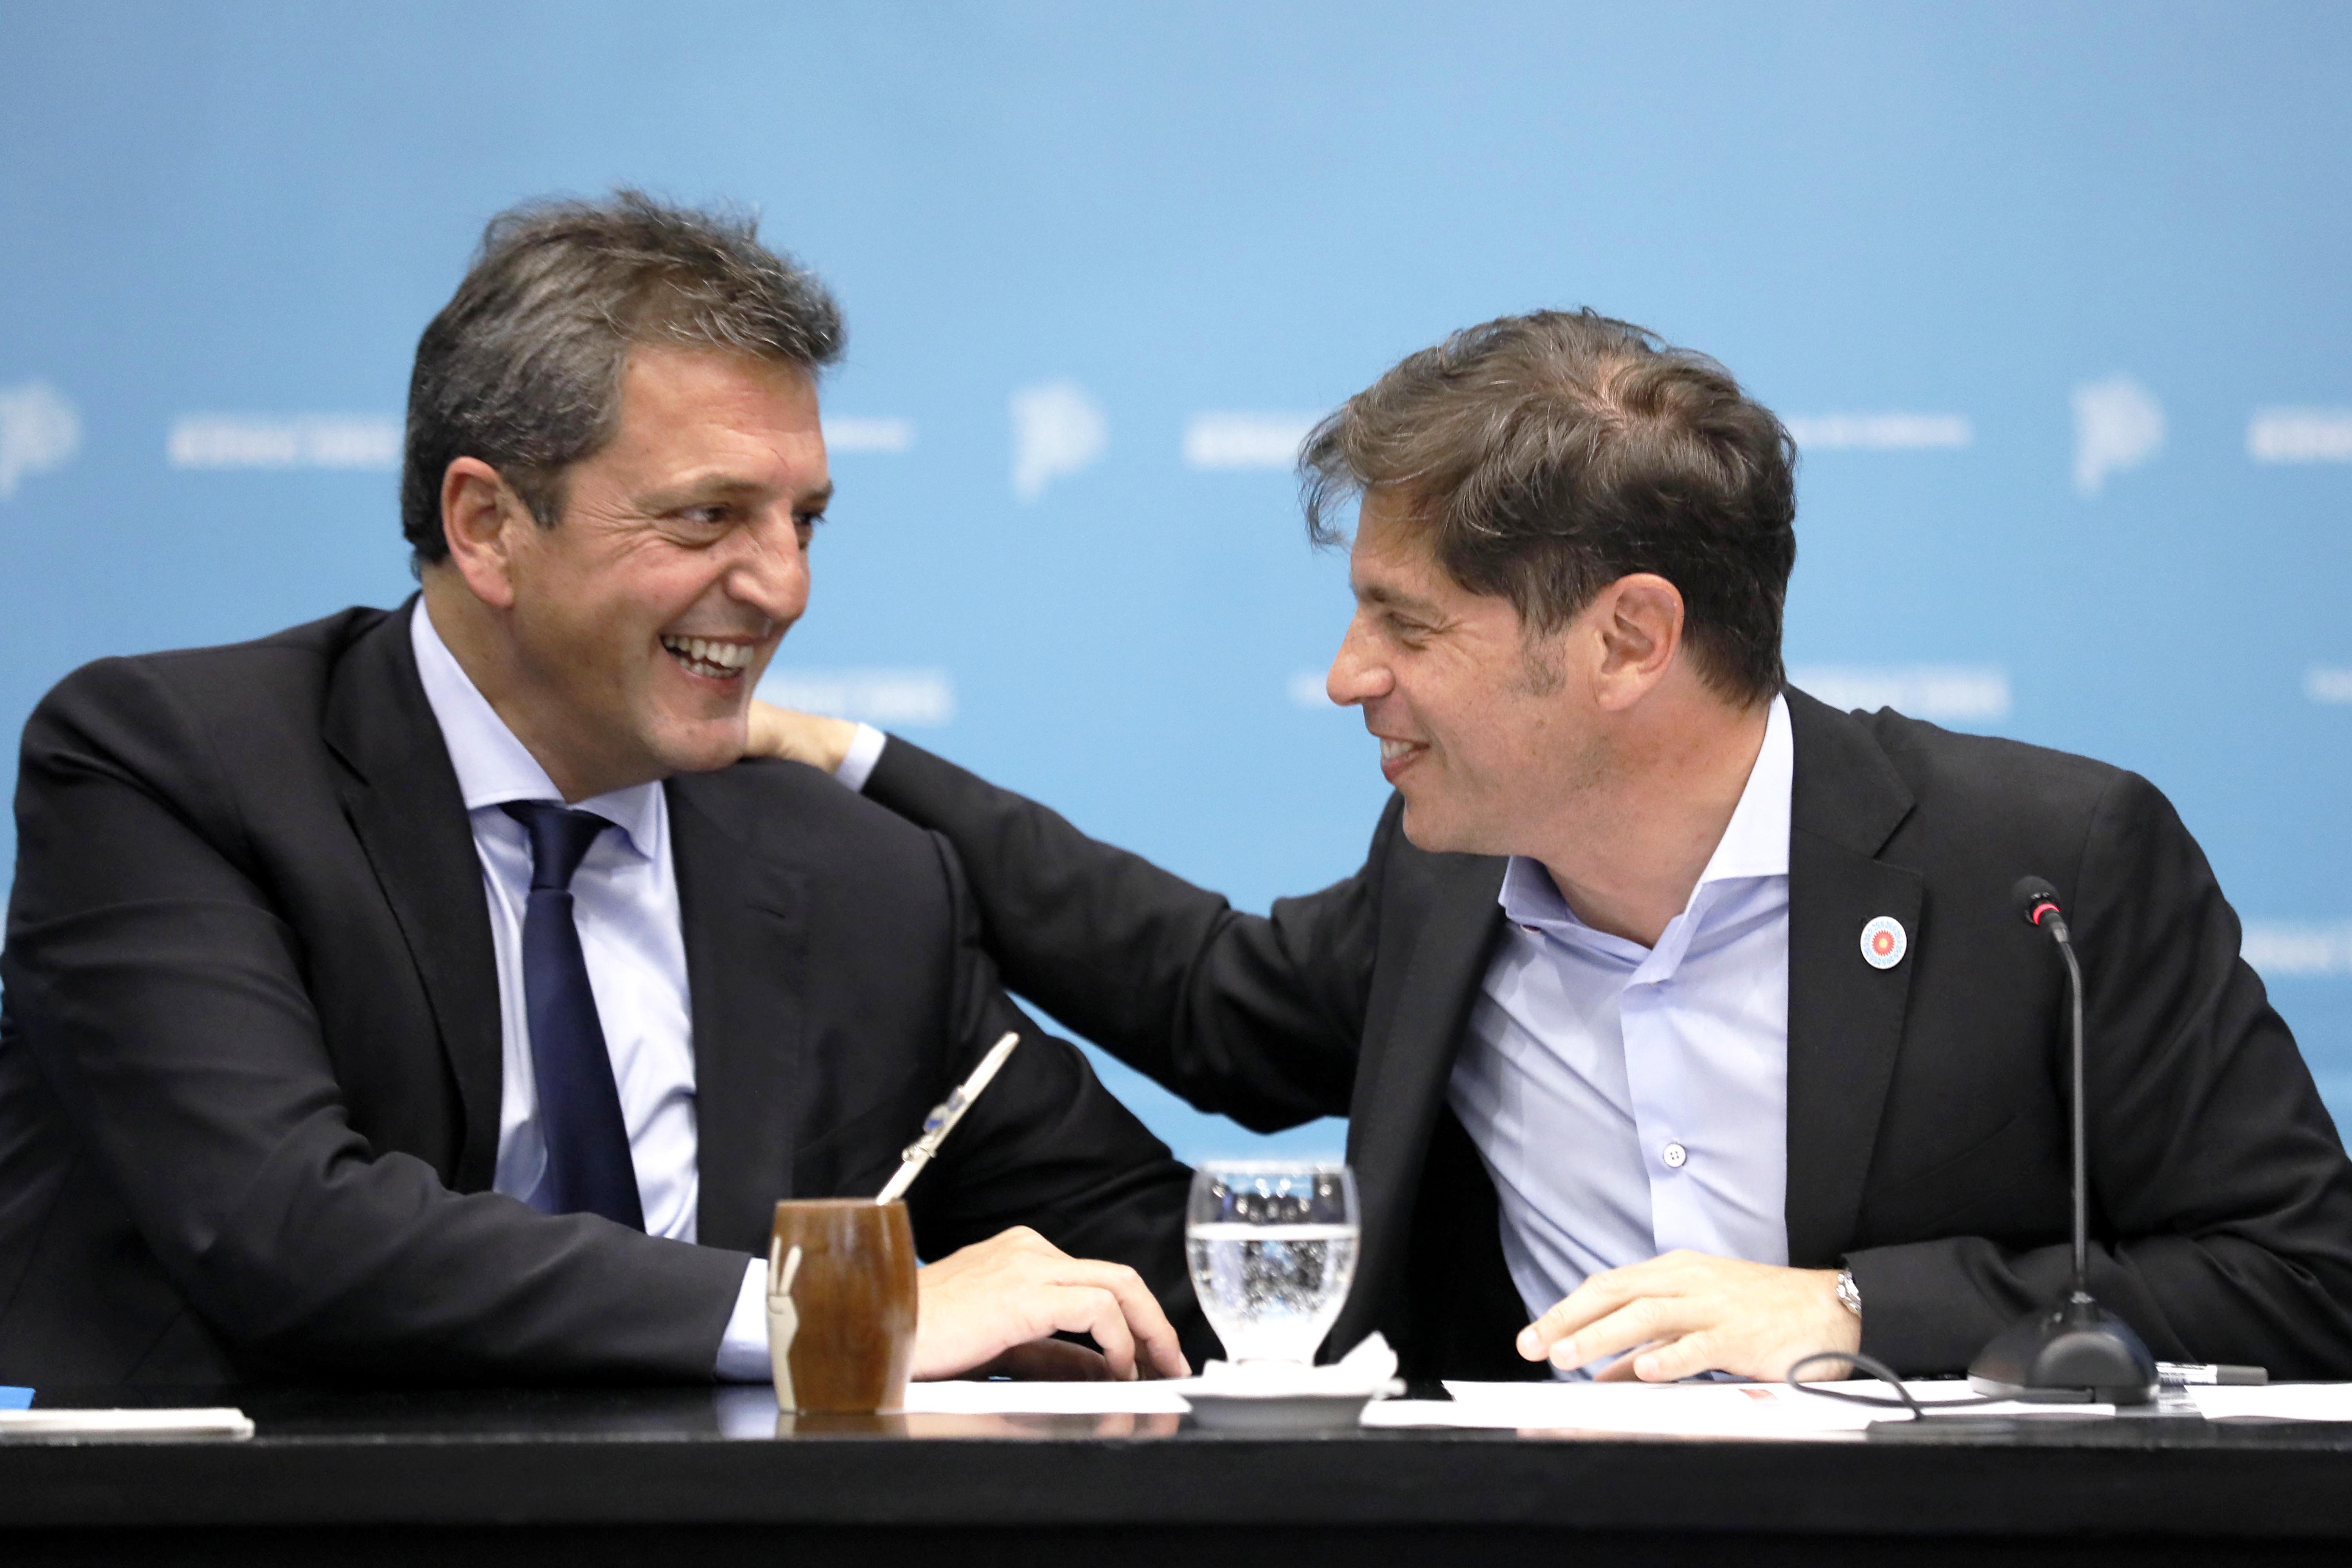 En un acto con tono político, intendentes del PJ y Kicillof respaldaron el programa Precios Justos de Sergio Massa